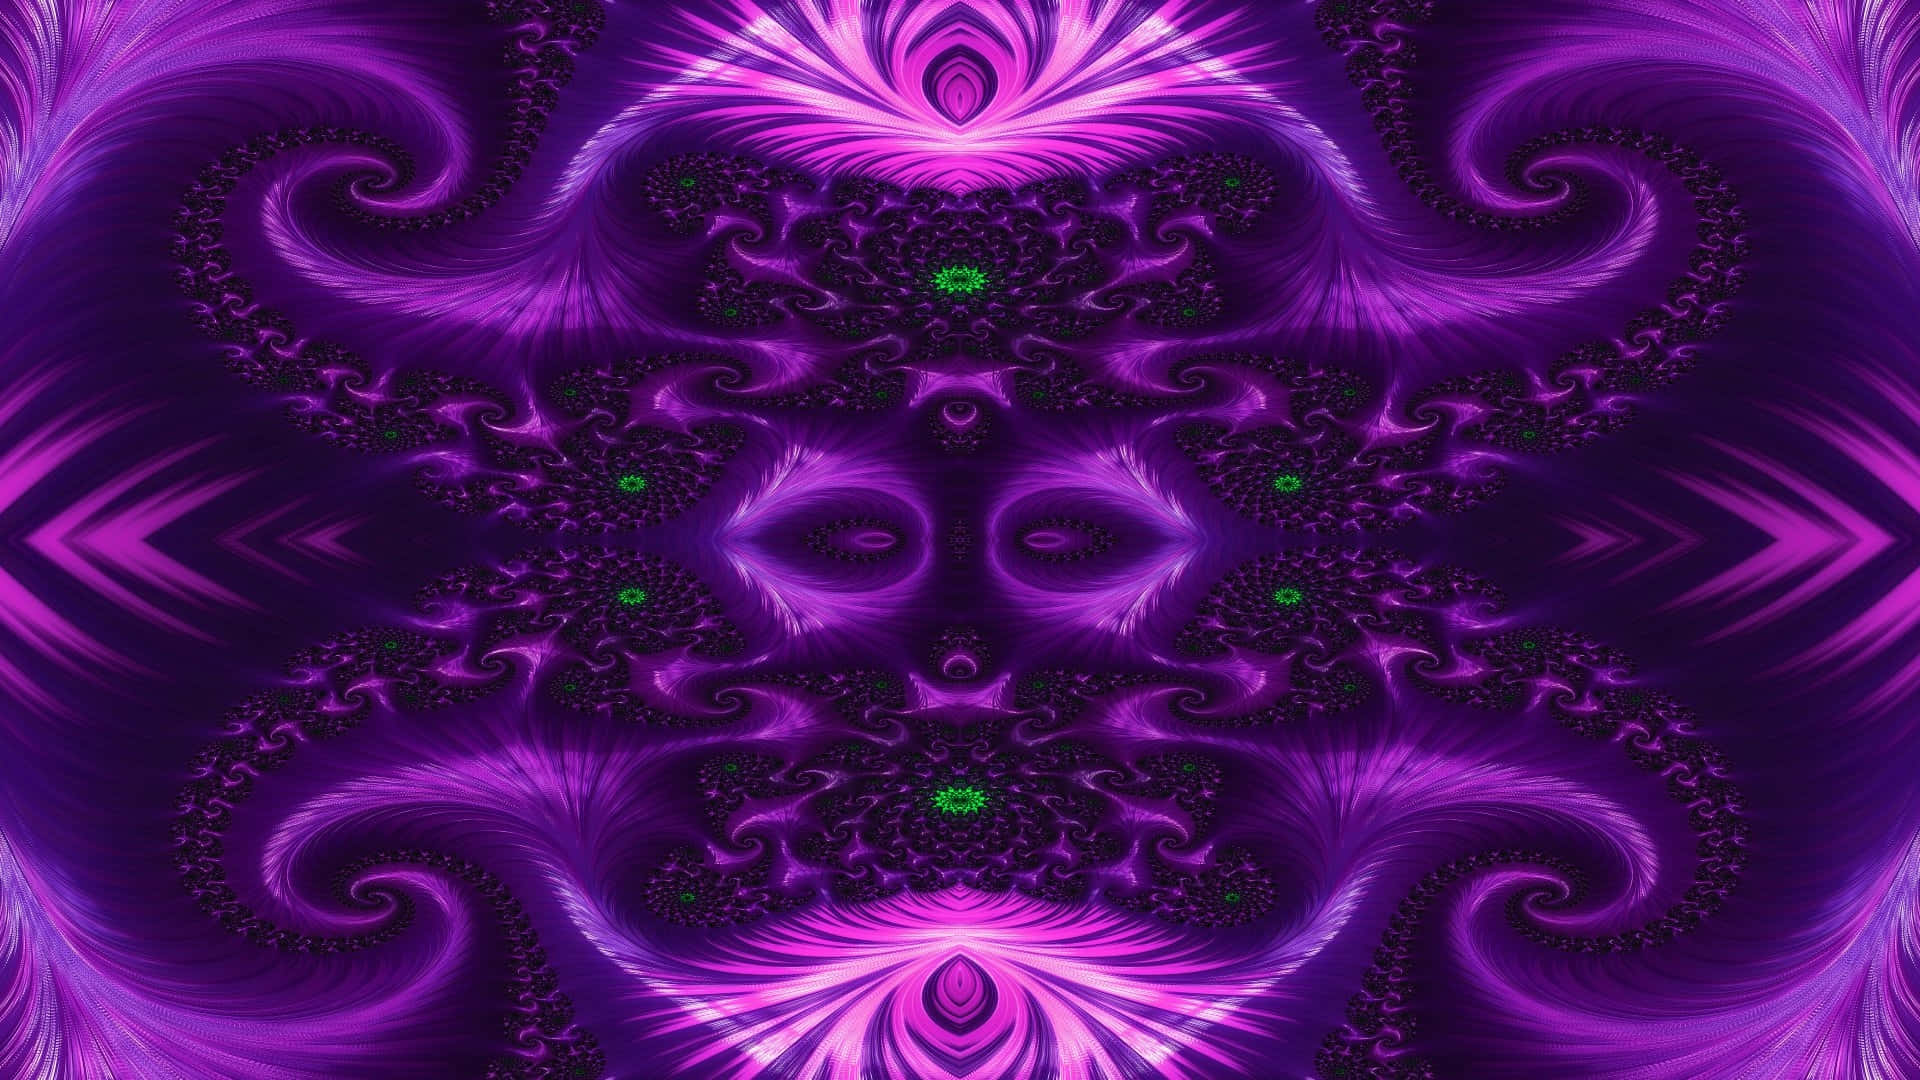 Purple Fractal Art Symmetry Trippy Aesthetic.jpg Wallpaper